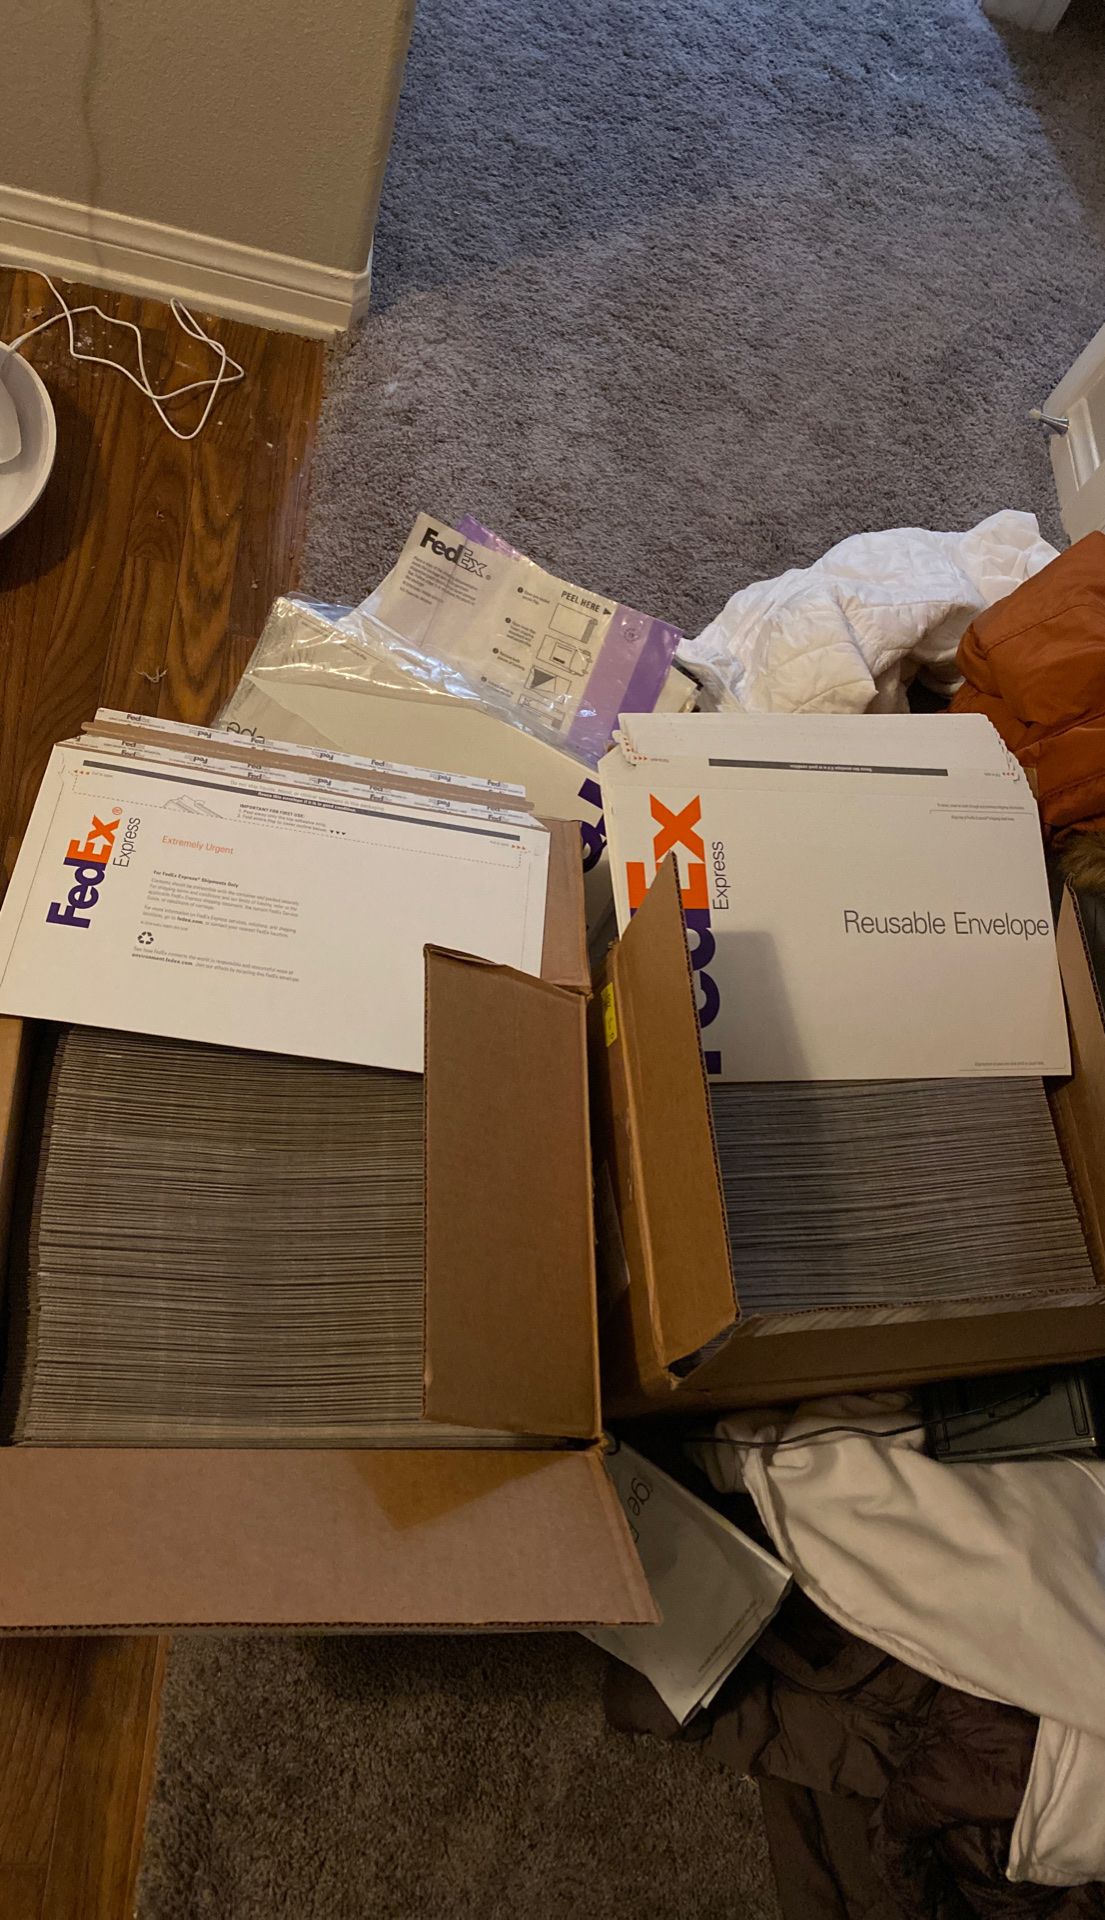 FedEx shipping envelopes